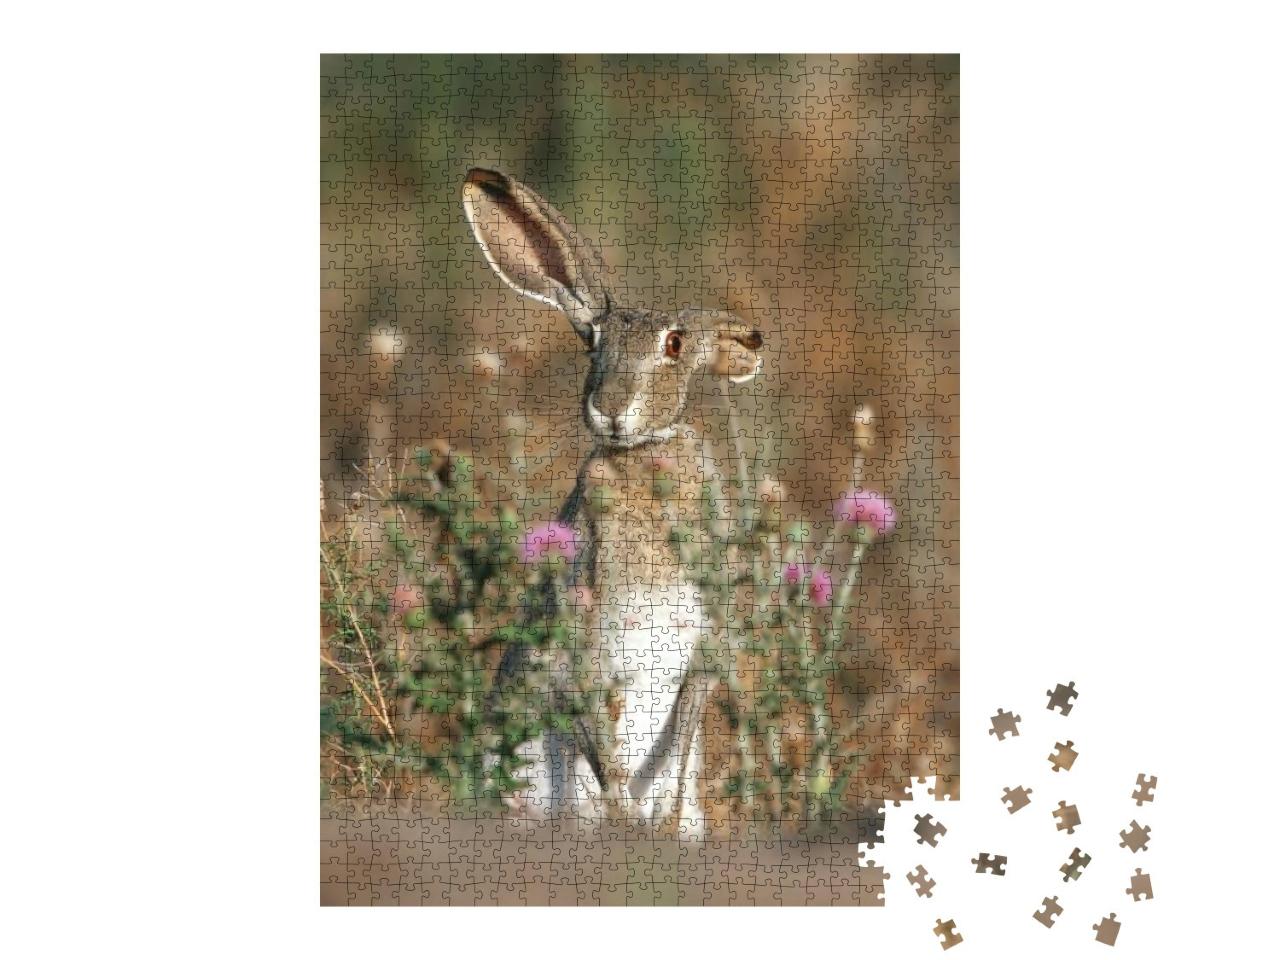 Puzzle 1000 Teile „Schwarzschwanz-Kaninchen mit langen Ohren, Texas, USA“